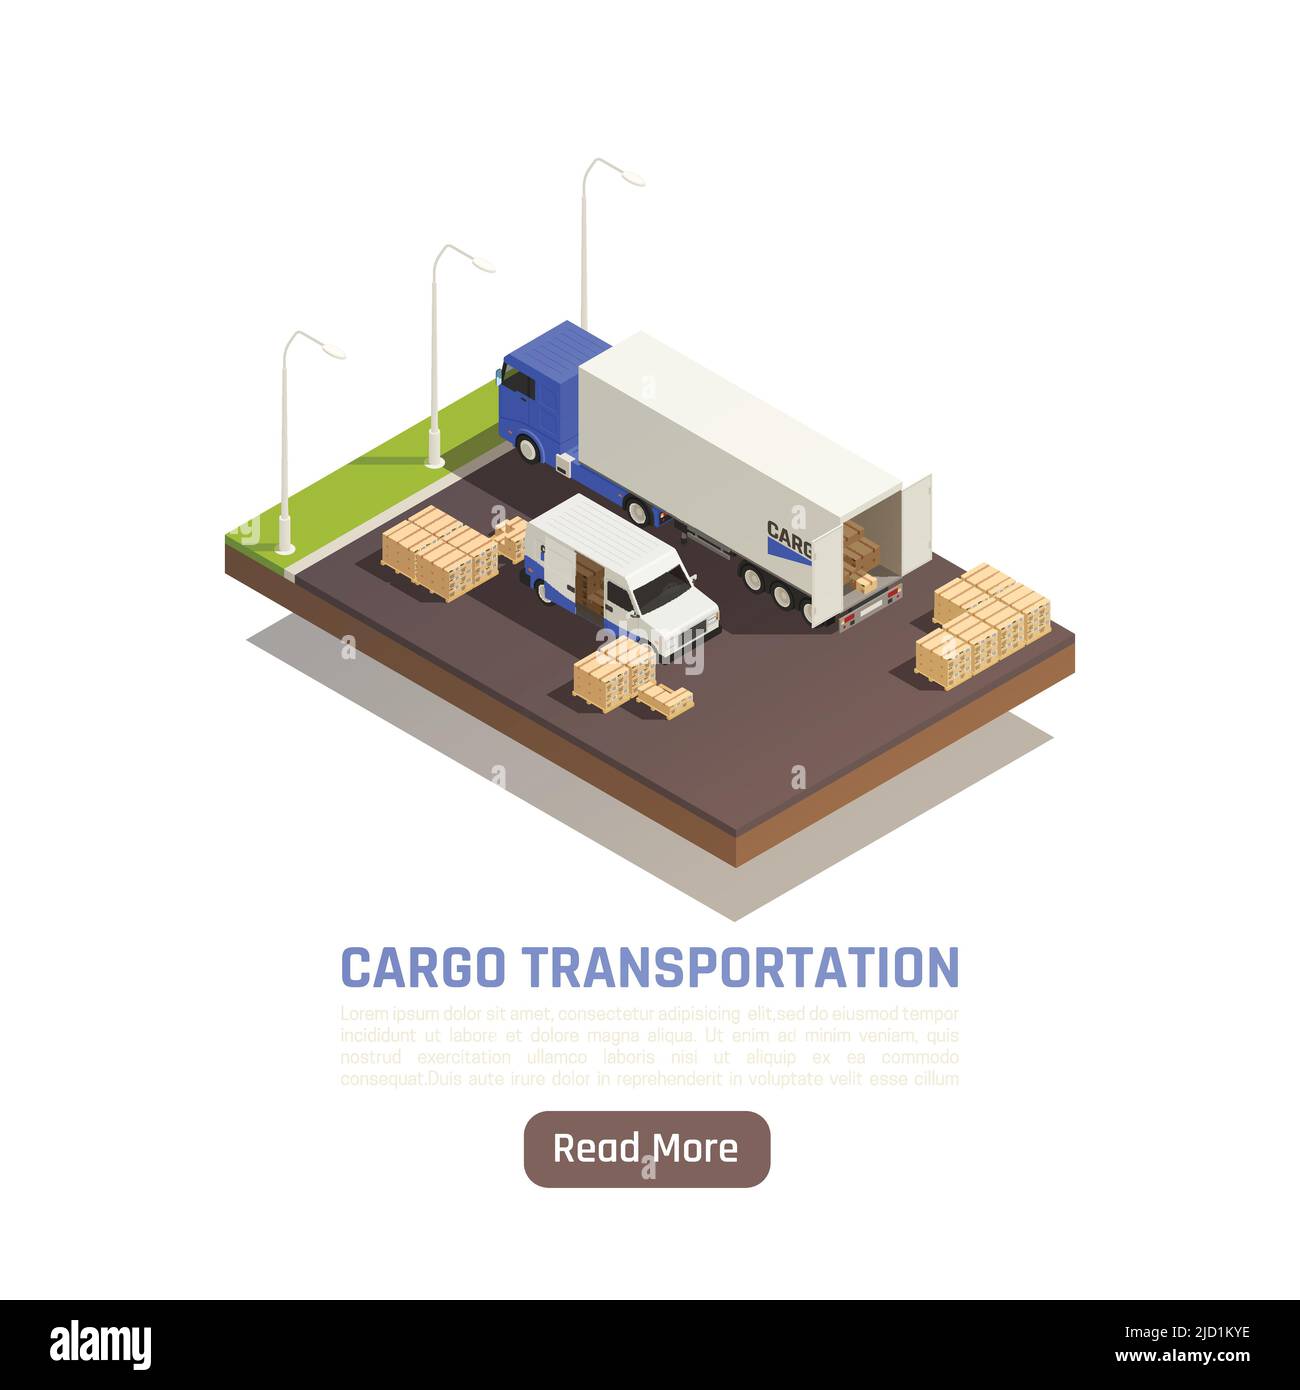 Cargo Transport logistische Lieferung isometrischen Hintergrund mit mehr lesen Button Text und LKW auf Parkplatz Vektor-Illustration Stock Vektor